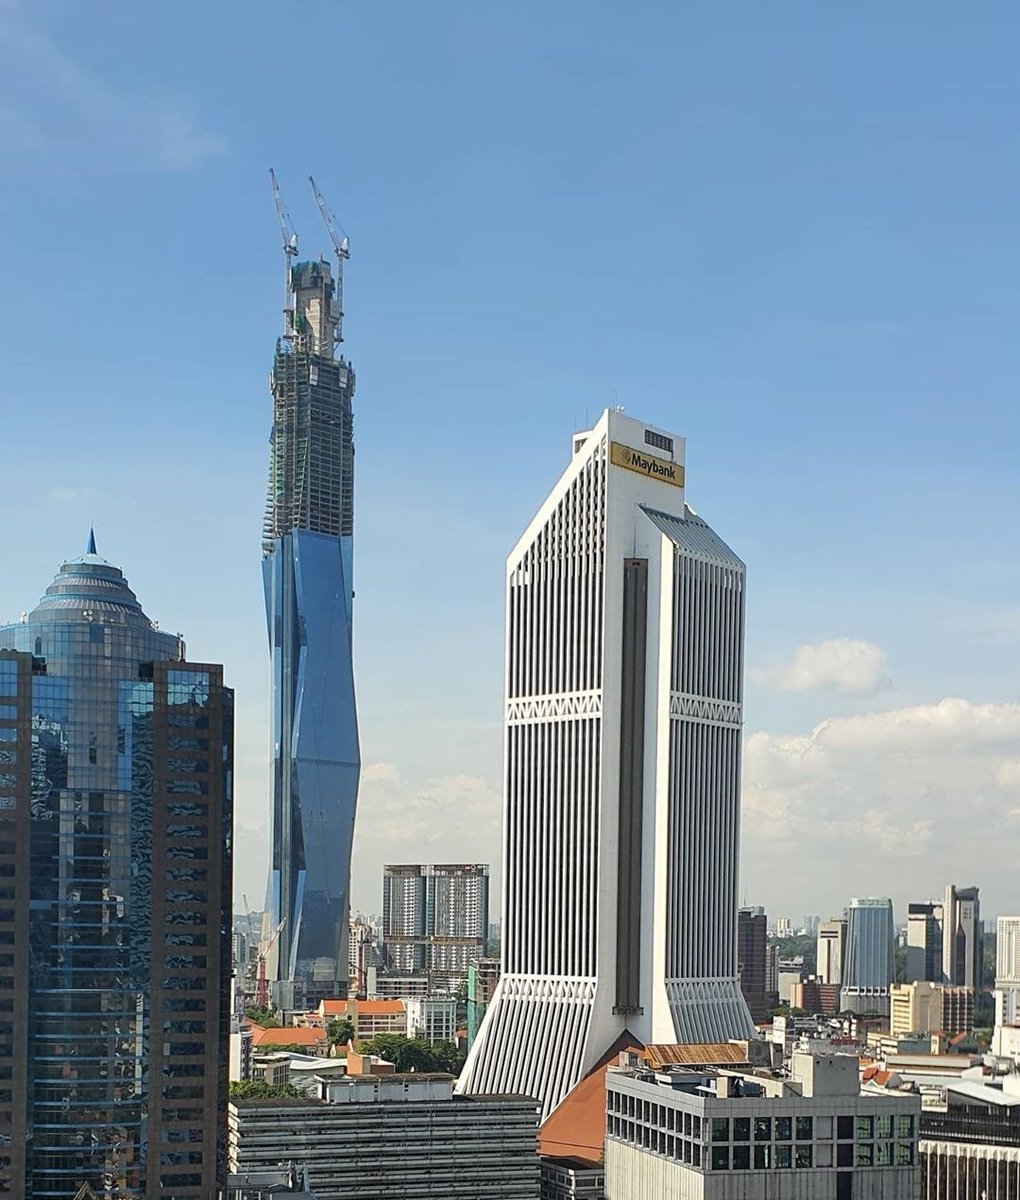 Dekat Kuala Lumpur, mesti korang perasan ada satu bangunan baru dalam pembinaan yang tinggi menjulang! Lagi tinggi dari KLCC, TRX & Menara KL.

Tahukah korang, bangunan tu kalau dah siap, ia akan jadi bangunan KEDUA TERTINGGI DI DUNIA selepas Burj Khalifa!

Ini adalah bebenang: